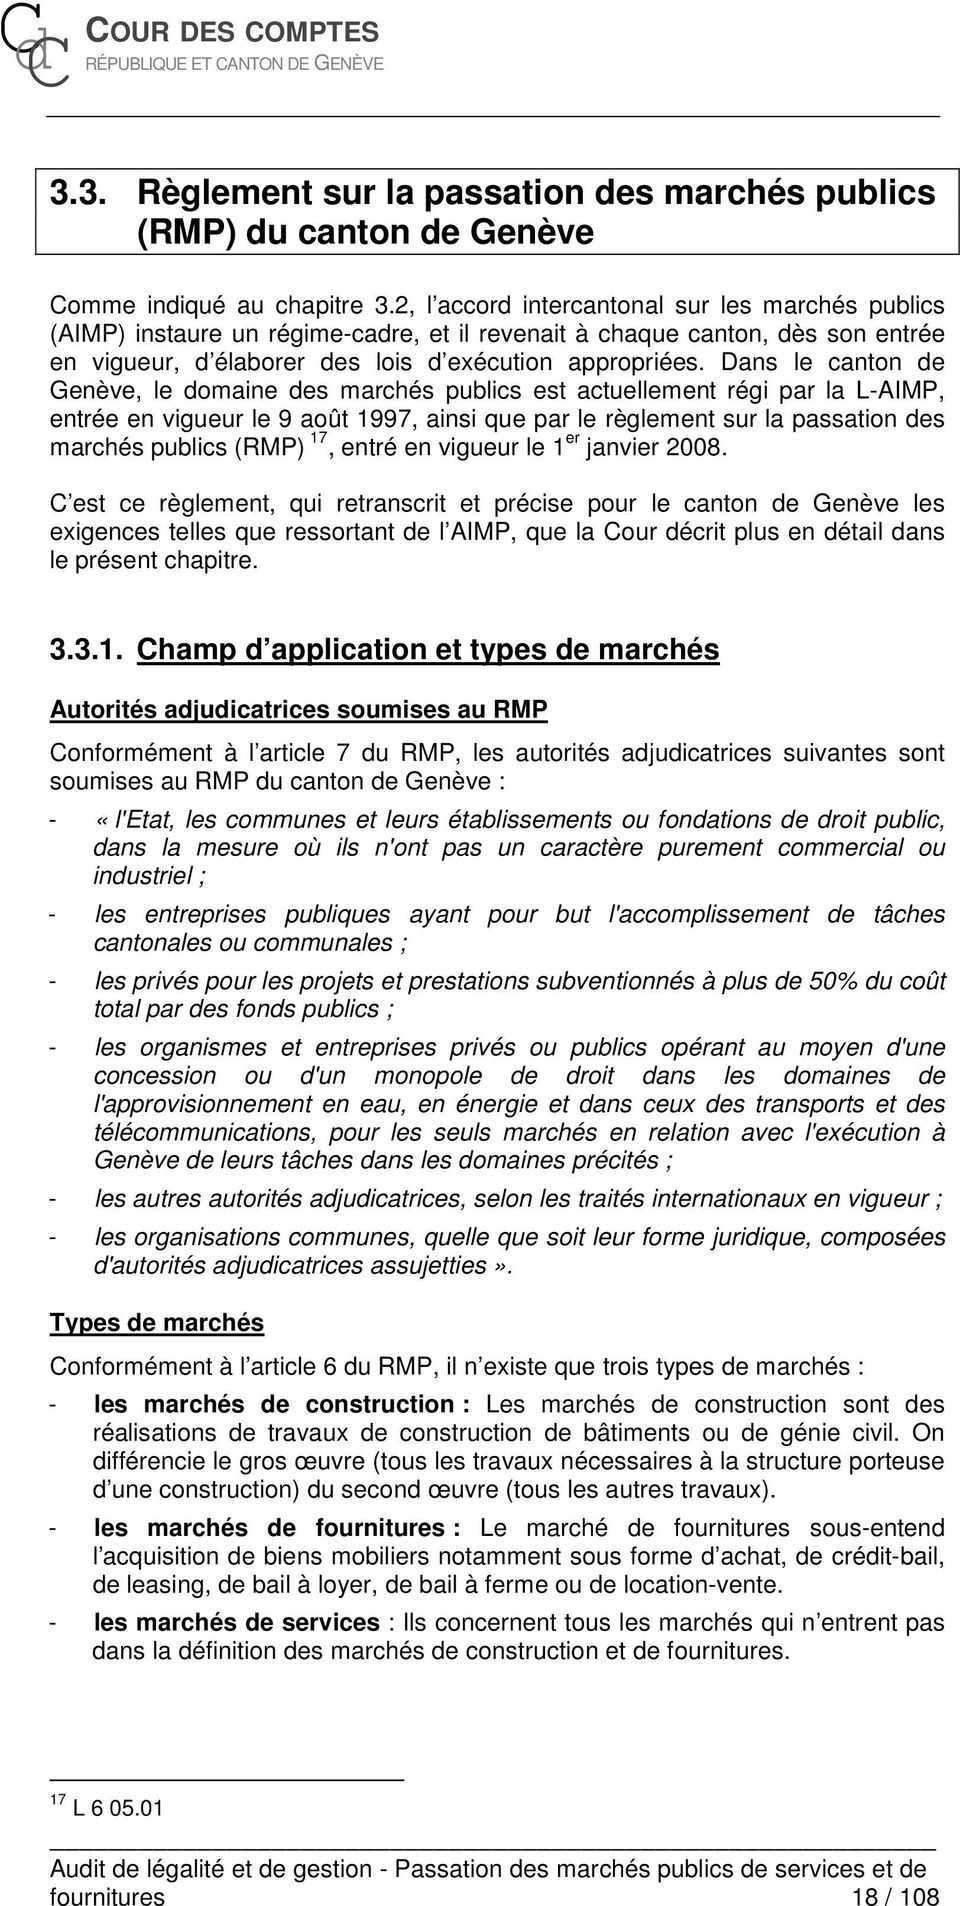 Dans le canton de Genève, le domaine des marchés publics est actuellement régi par la L-AIMP, entrée en vigueur le 9 août 1997, ainsi que par le règlement sur la passation des marchés publics (RMP)